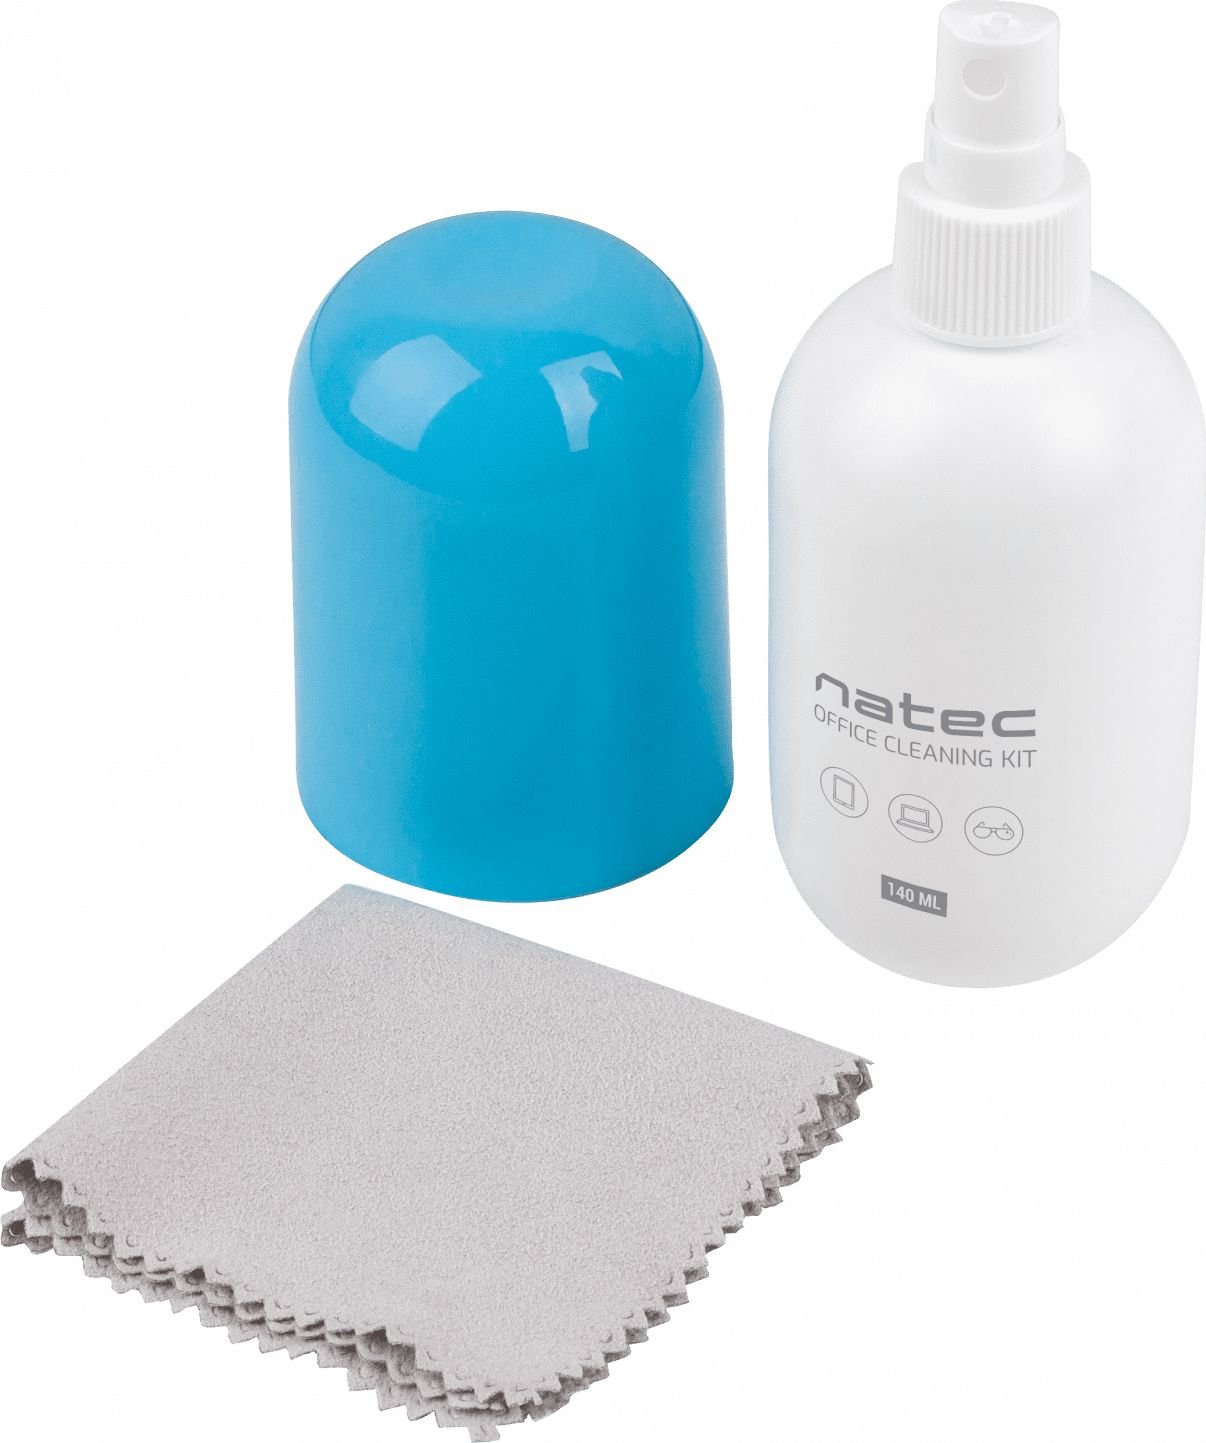 Spray de curatare 140ml cu laveta din microfibra pentru echipamente de birou Natec Raccoon Office Cleaning Kit